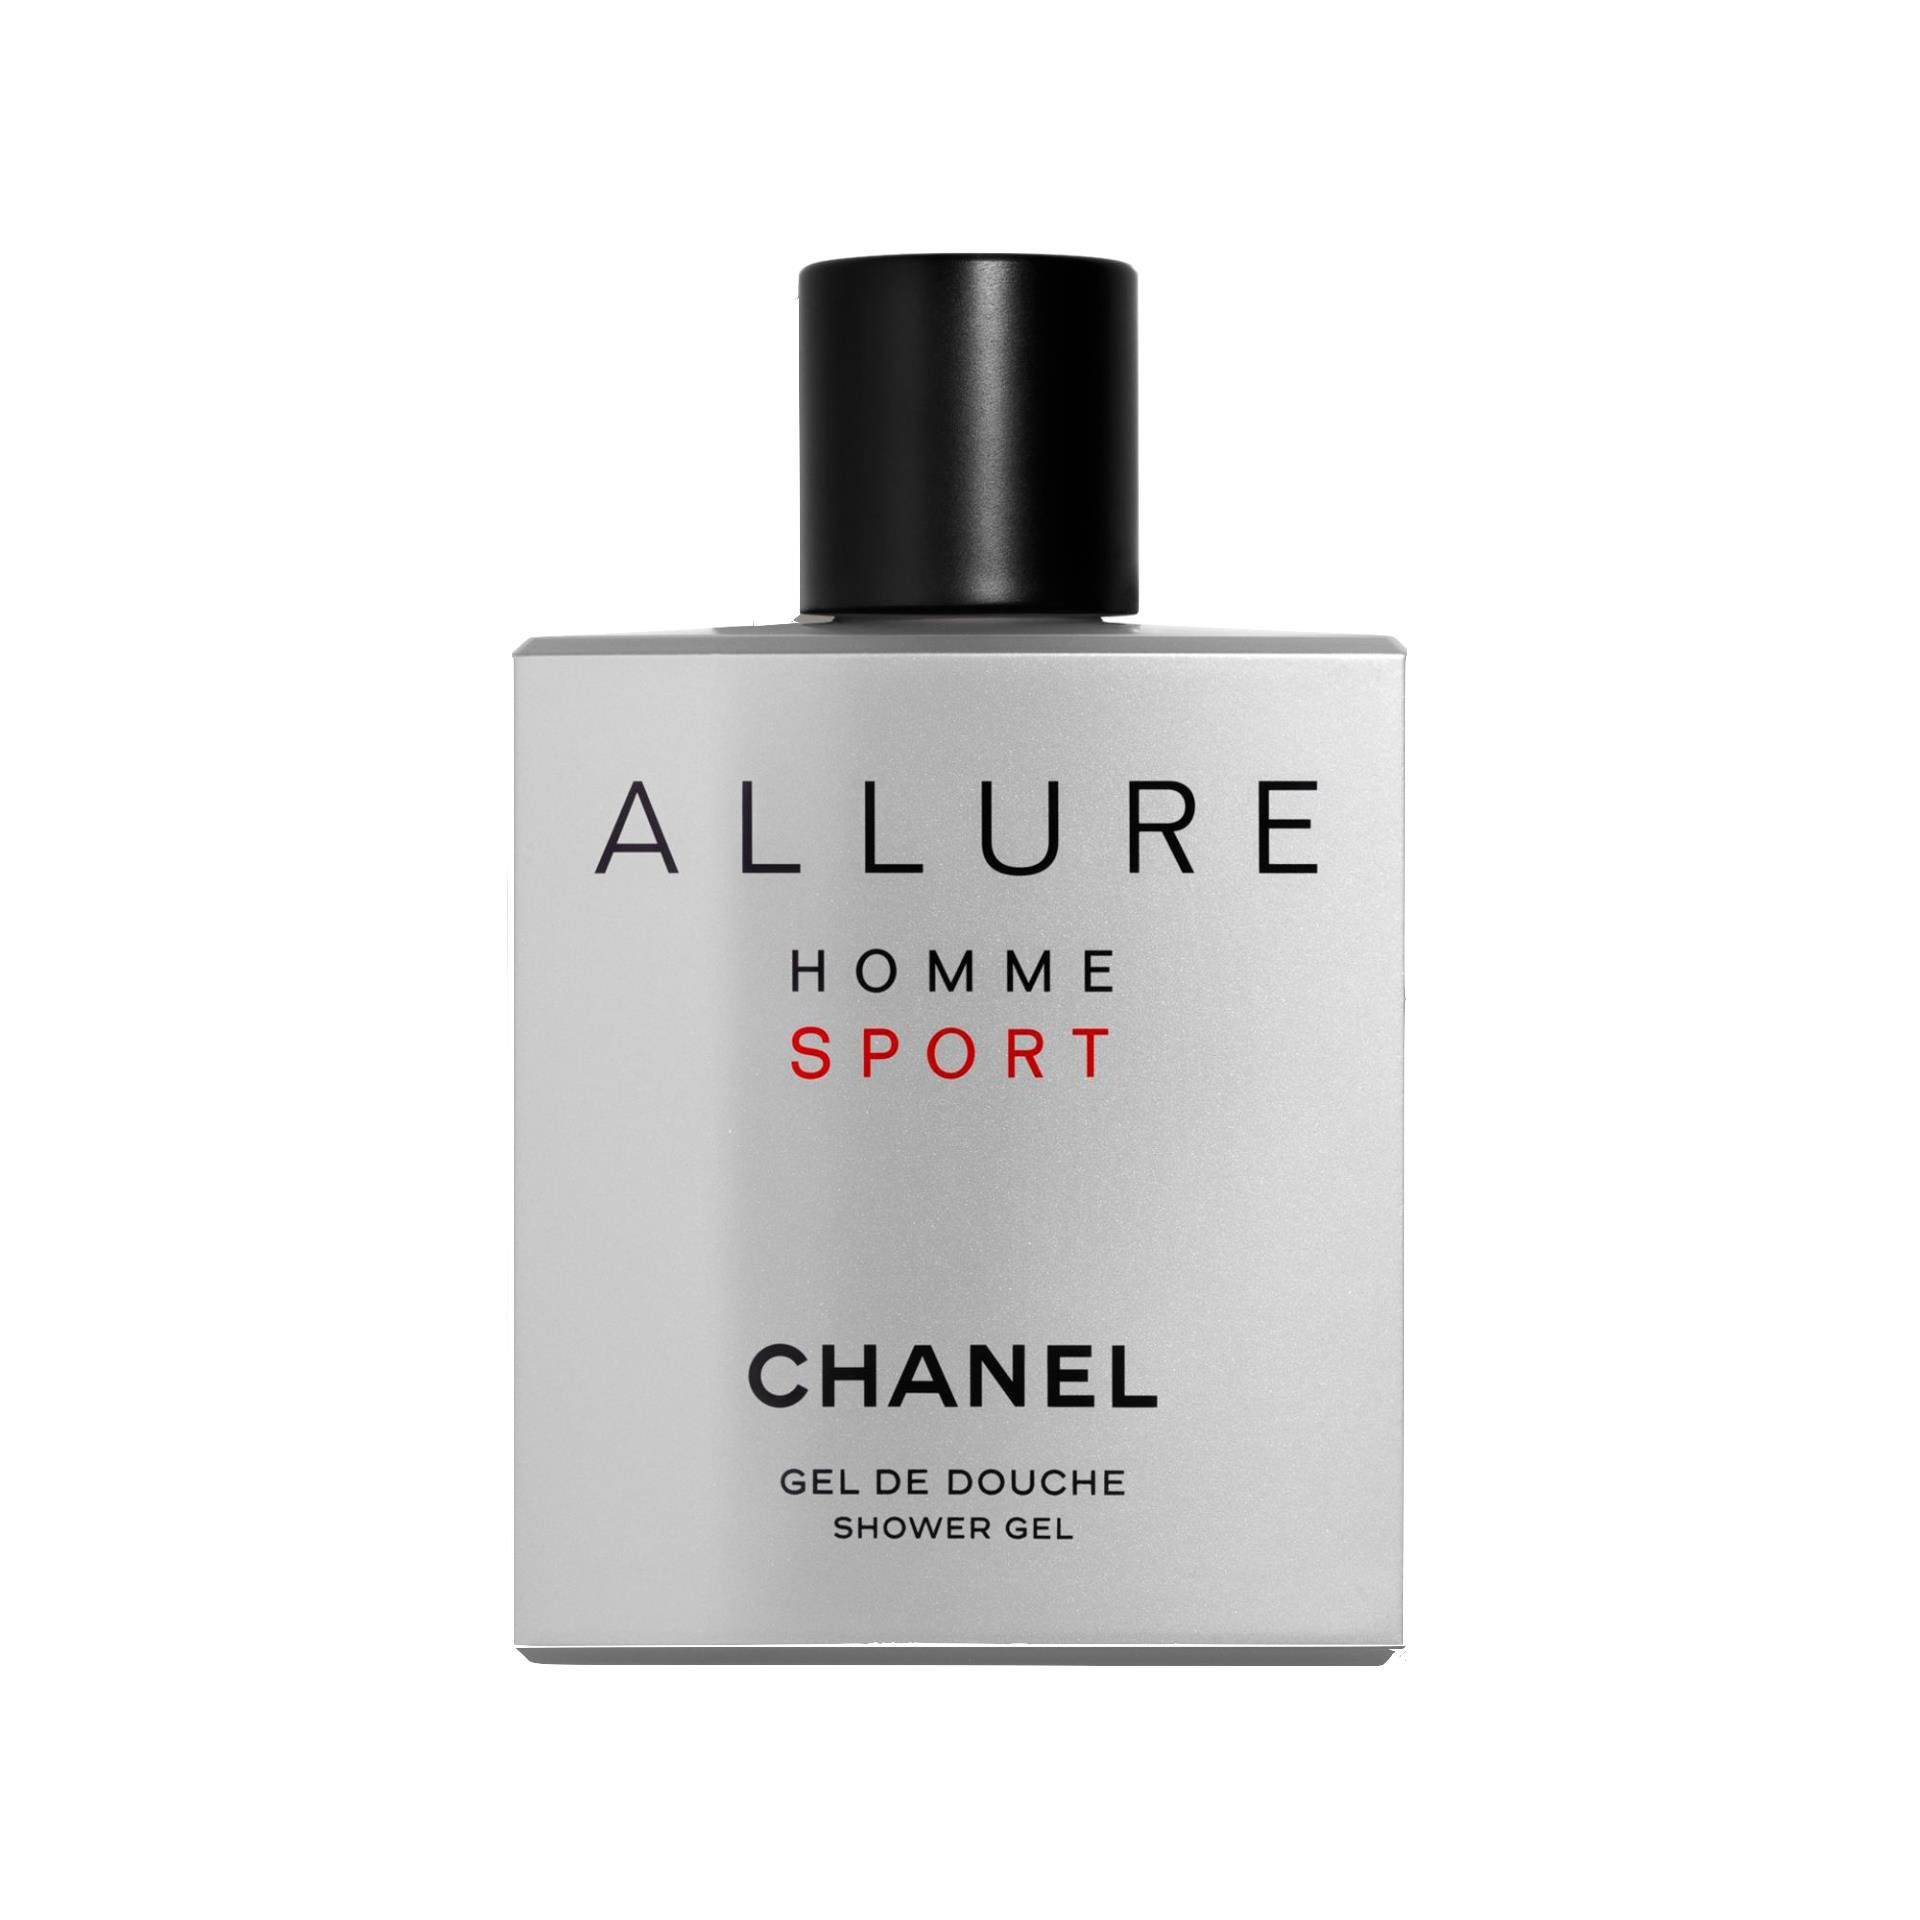 CHANEL BLEU DE CHANEL After Shave Balm for Men 3.0oz/90ml -New Sealed FRESH